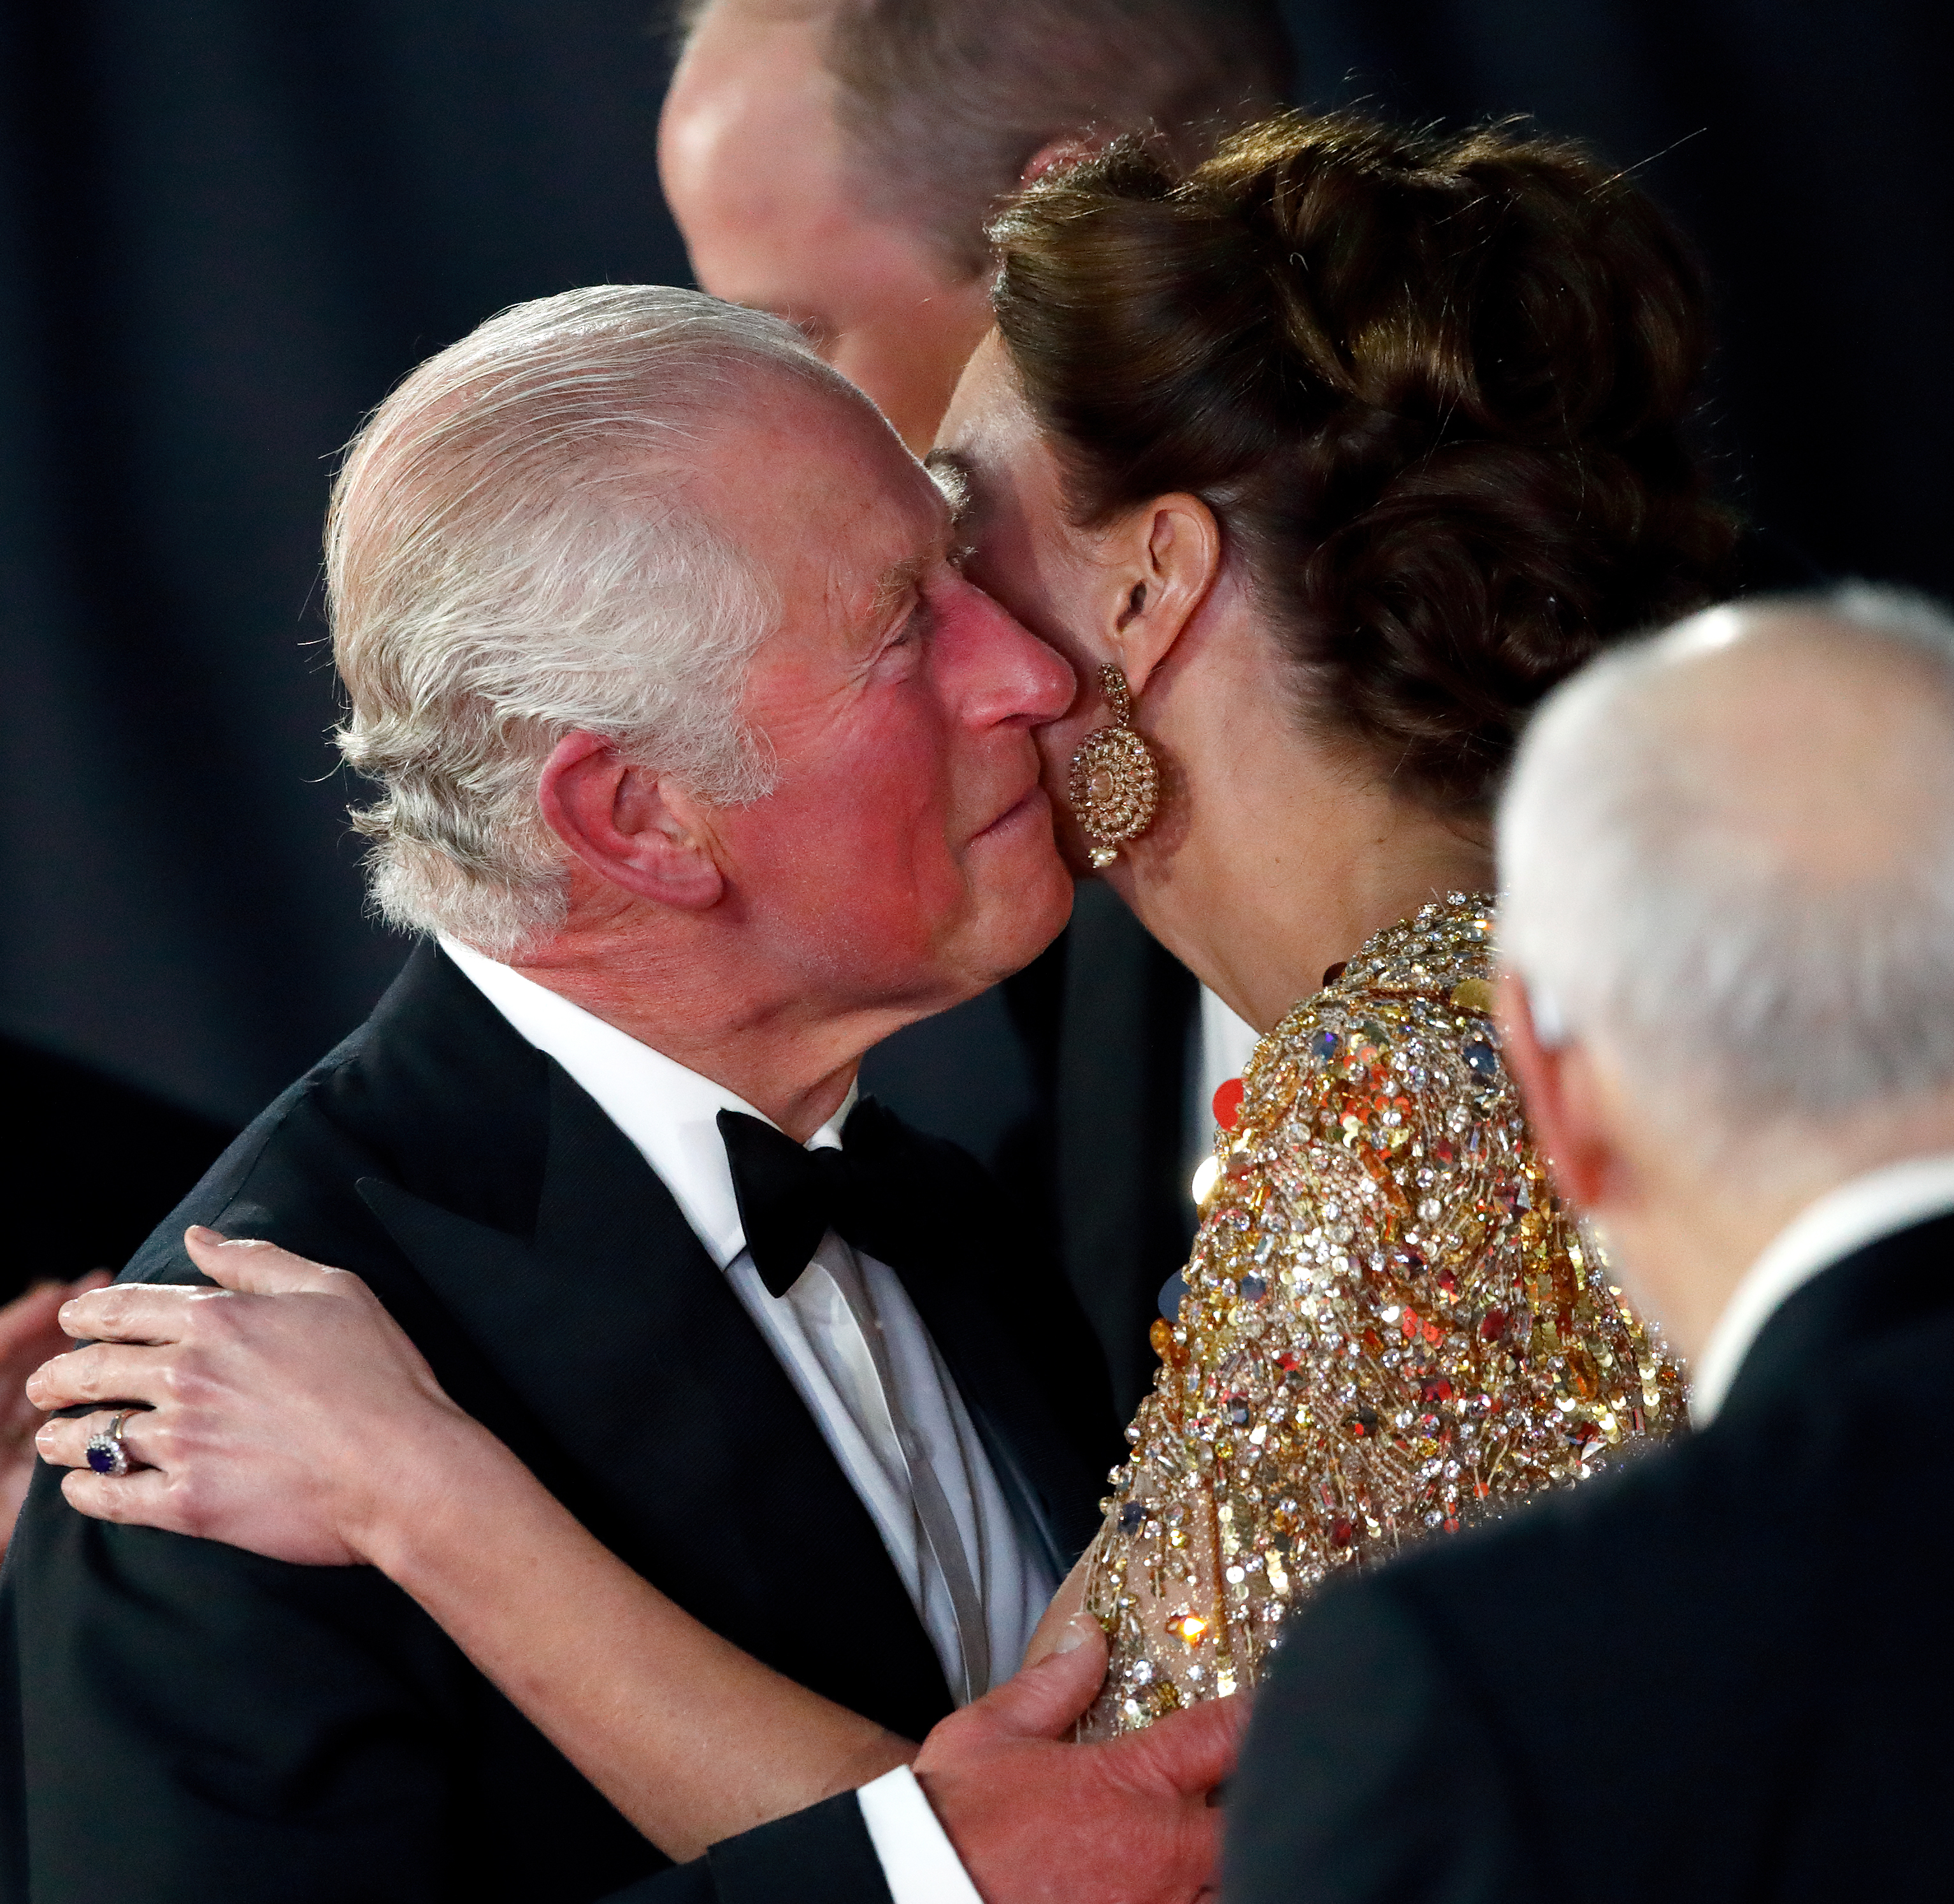 König Charles III. küsst die Prinzessin von Wales bei der "No Time To Die"-Weltpremiere in London im Jahr 2021 | Quelle: Getty Images